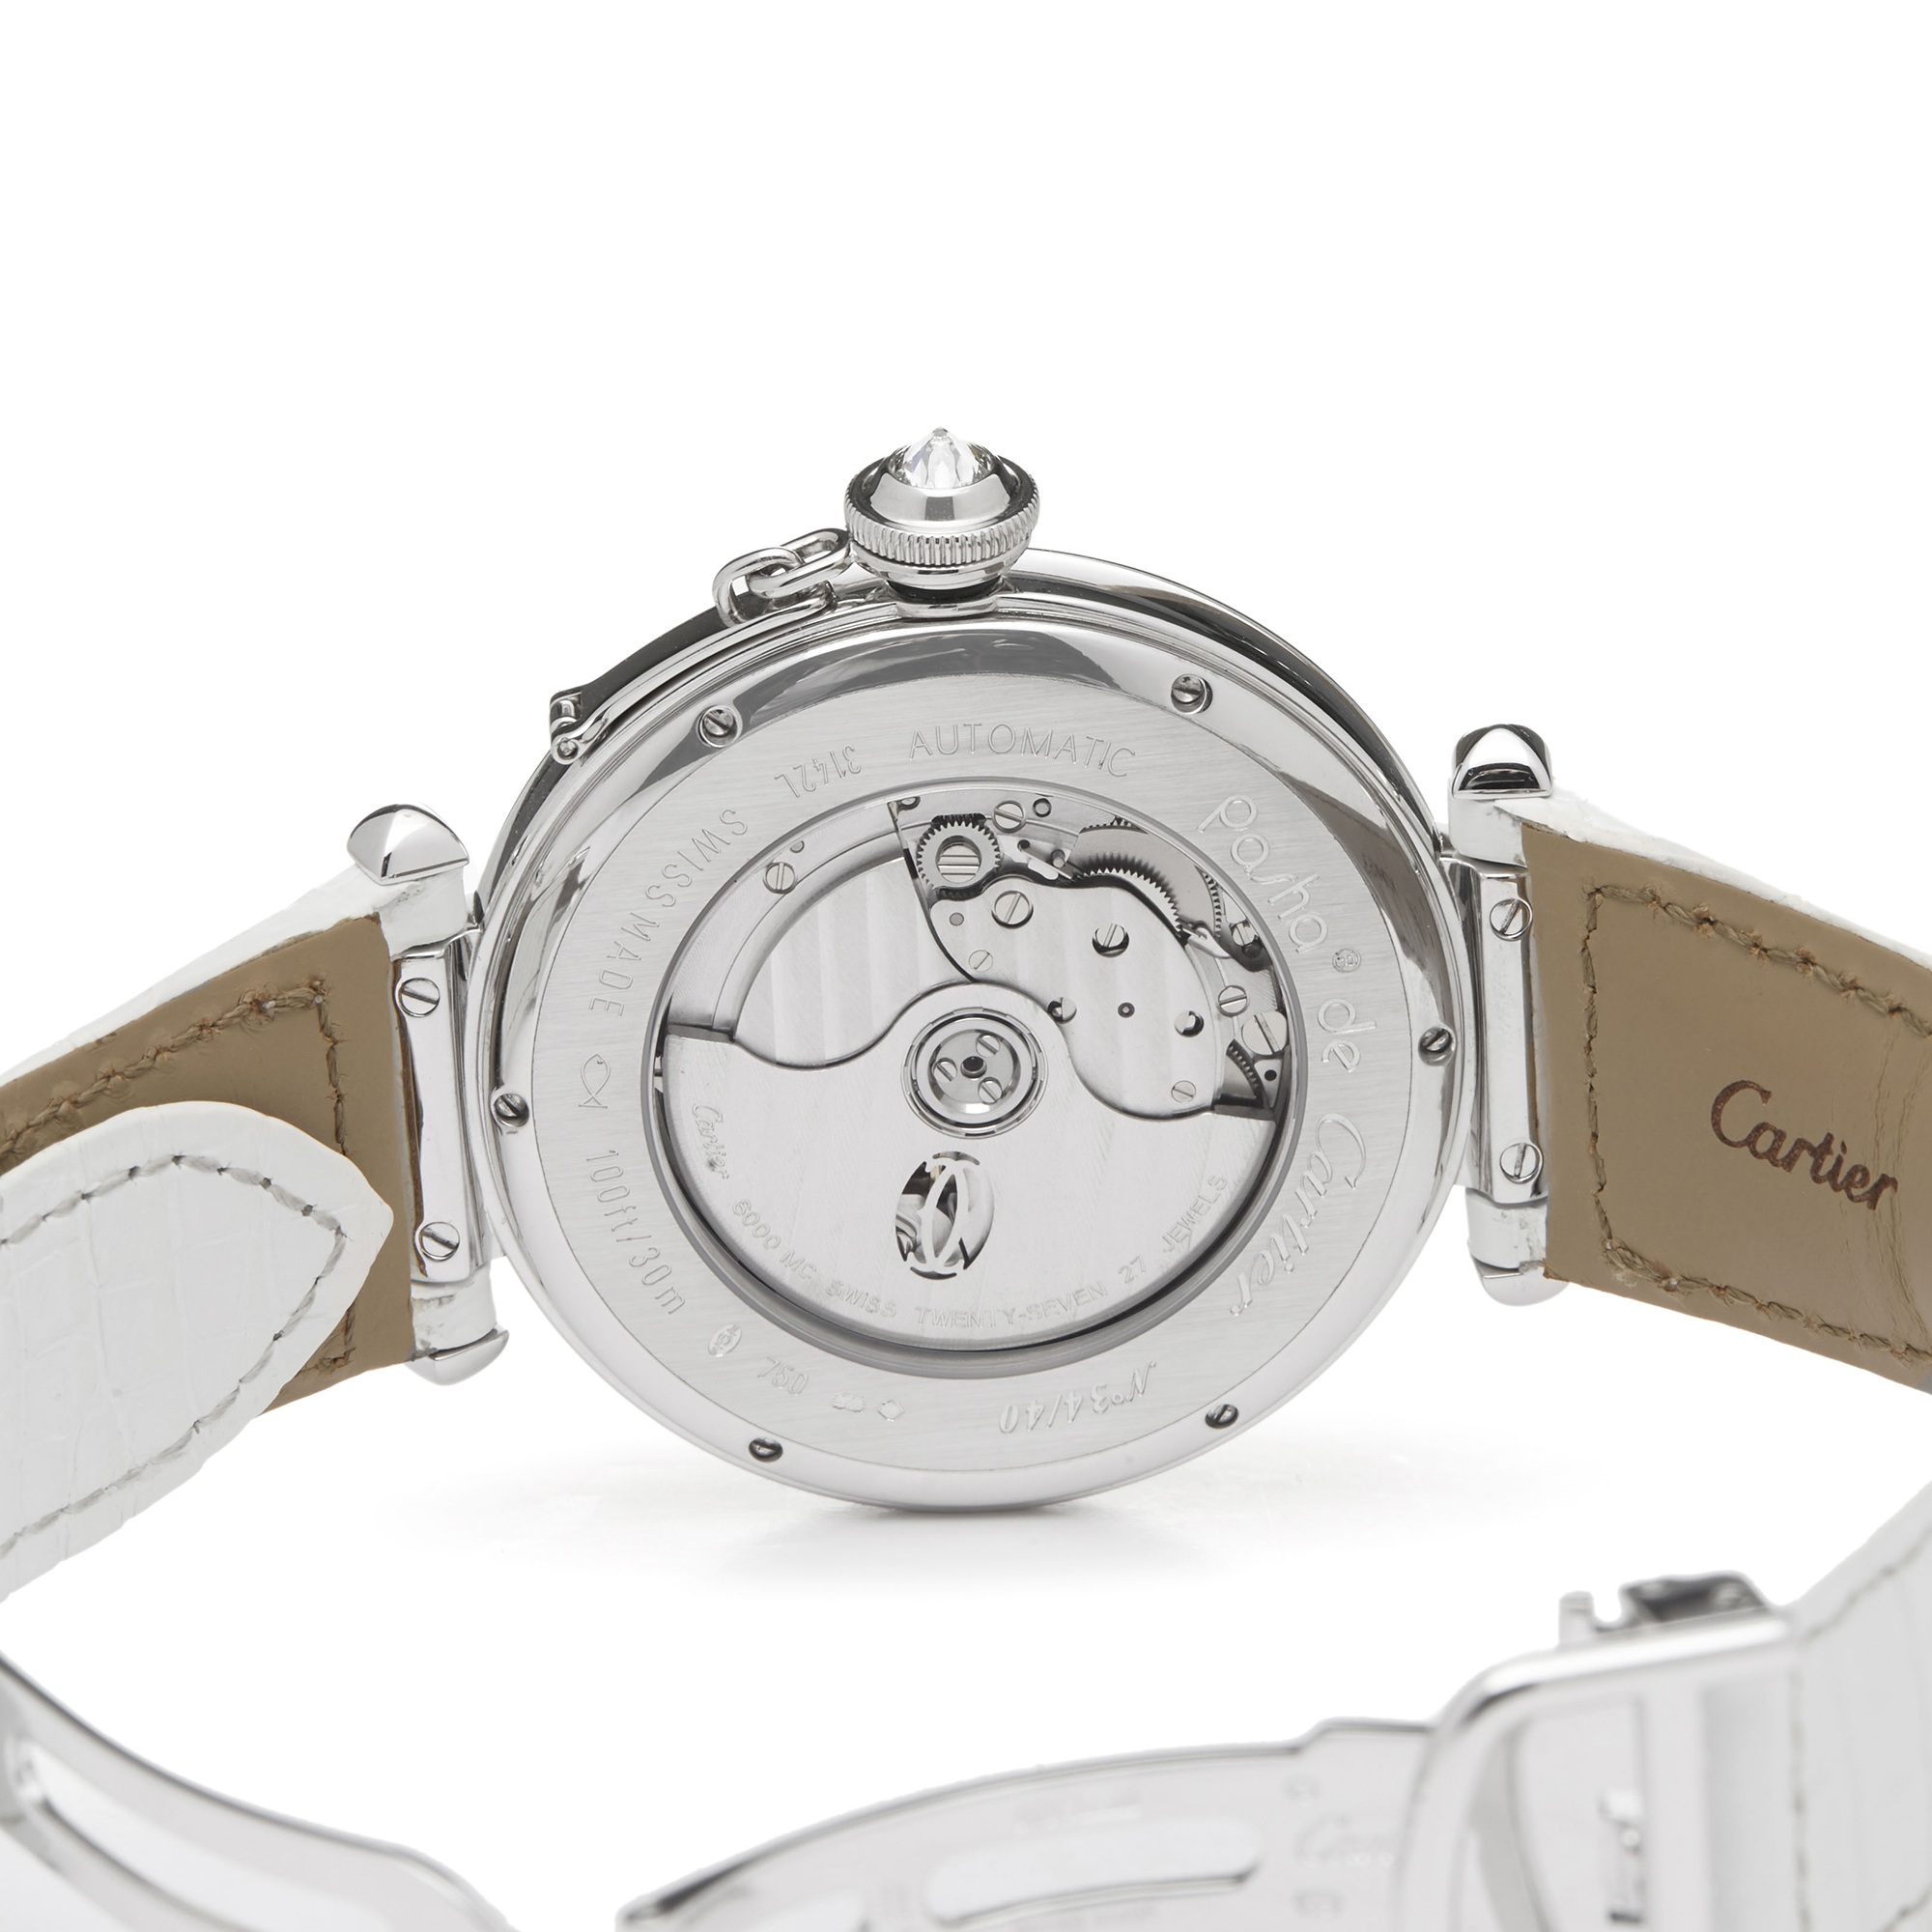 Cartier Pasha de Cartier WJ124006 or 3142L Ladies White Gold Enamel Dial Watch - Image 4 of 8